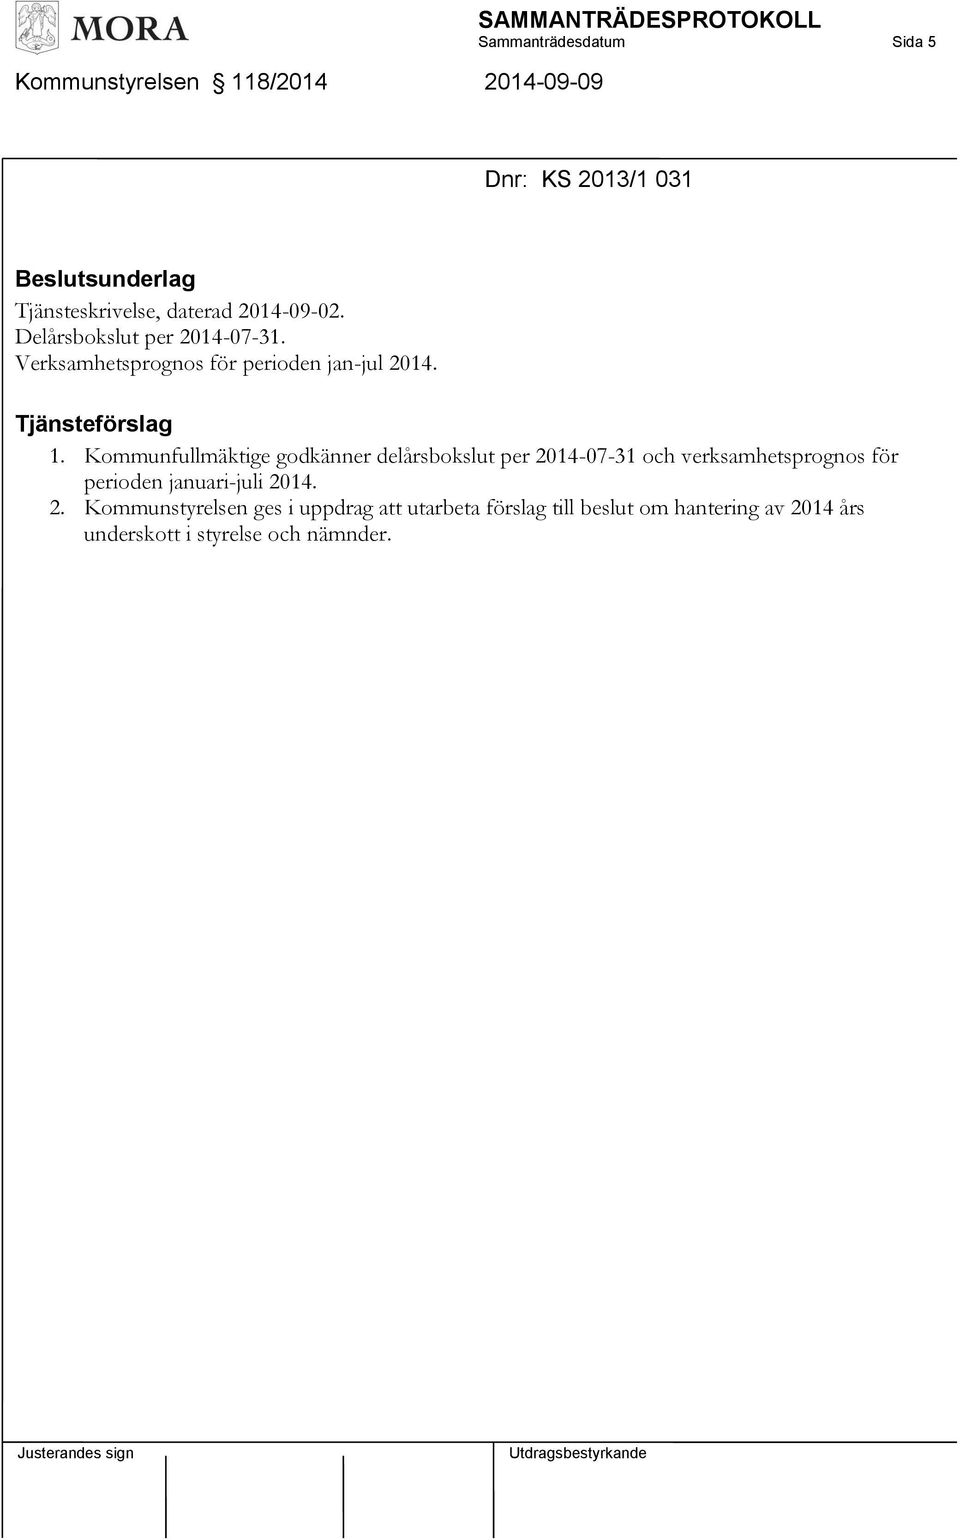 Kommunfullmäktige godkänner delårsbokslut per 2014-07-31 och verksamhetsprognos för perioden januari-juli